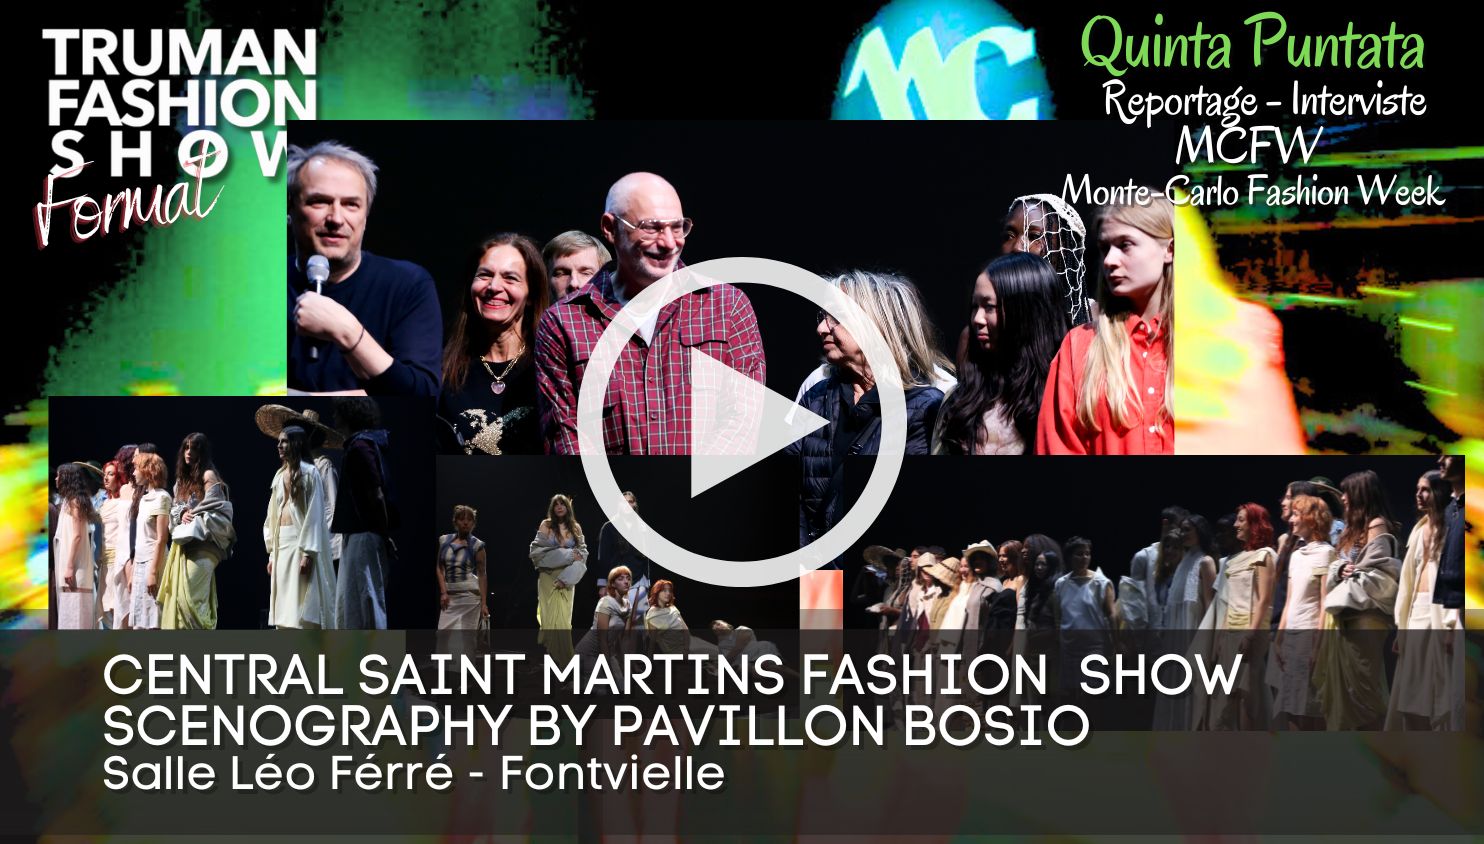 Quinta Puntata del Reportage della Montecarlo Fashion Week MCFW organizzata dalla Camera della Moda di Monaco, Presidentessa Federica Nardoni Spinetta.